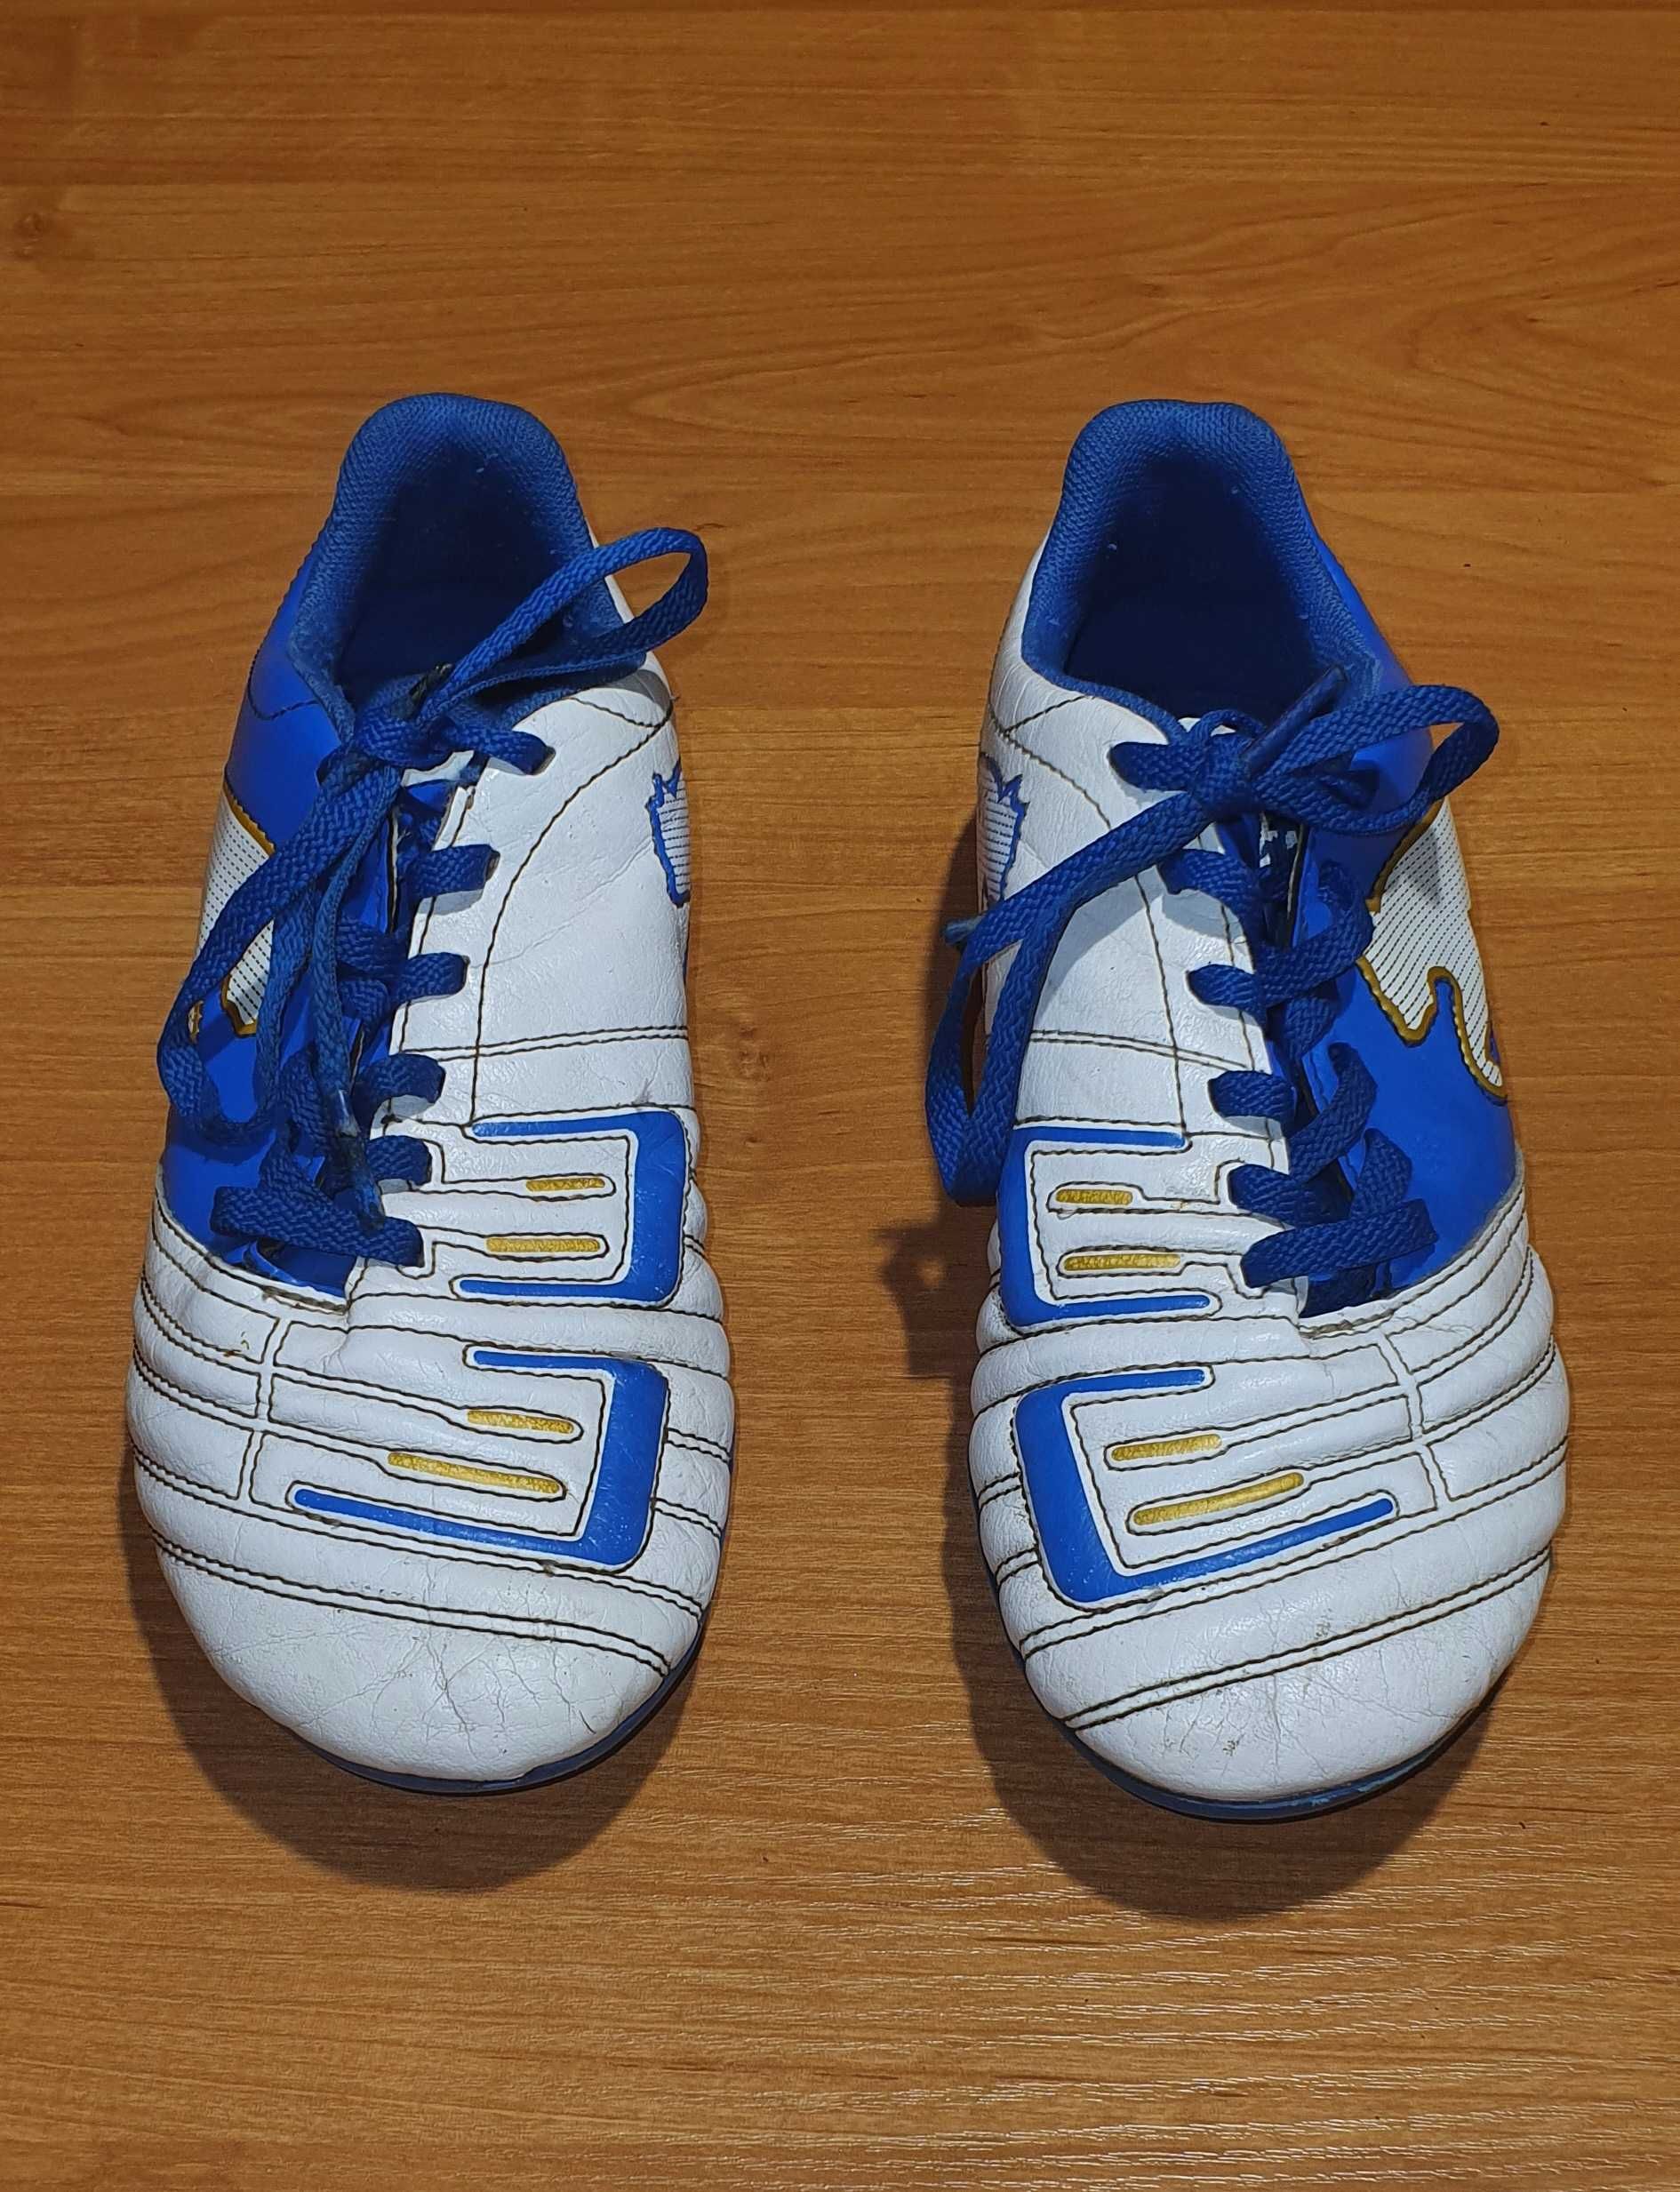 Buty piłkarskie PUMA PowerCat 4.12 FG, rozm. 35,5 (dł. wkł. 22 cm)